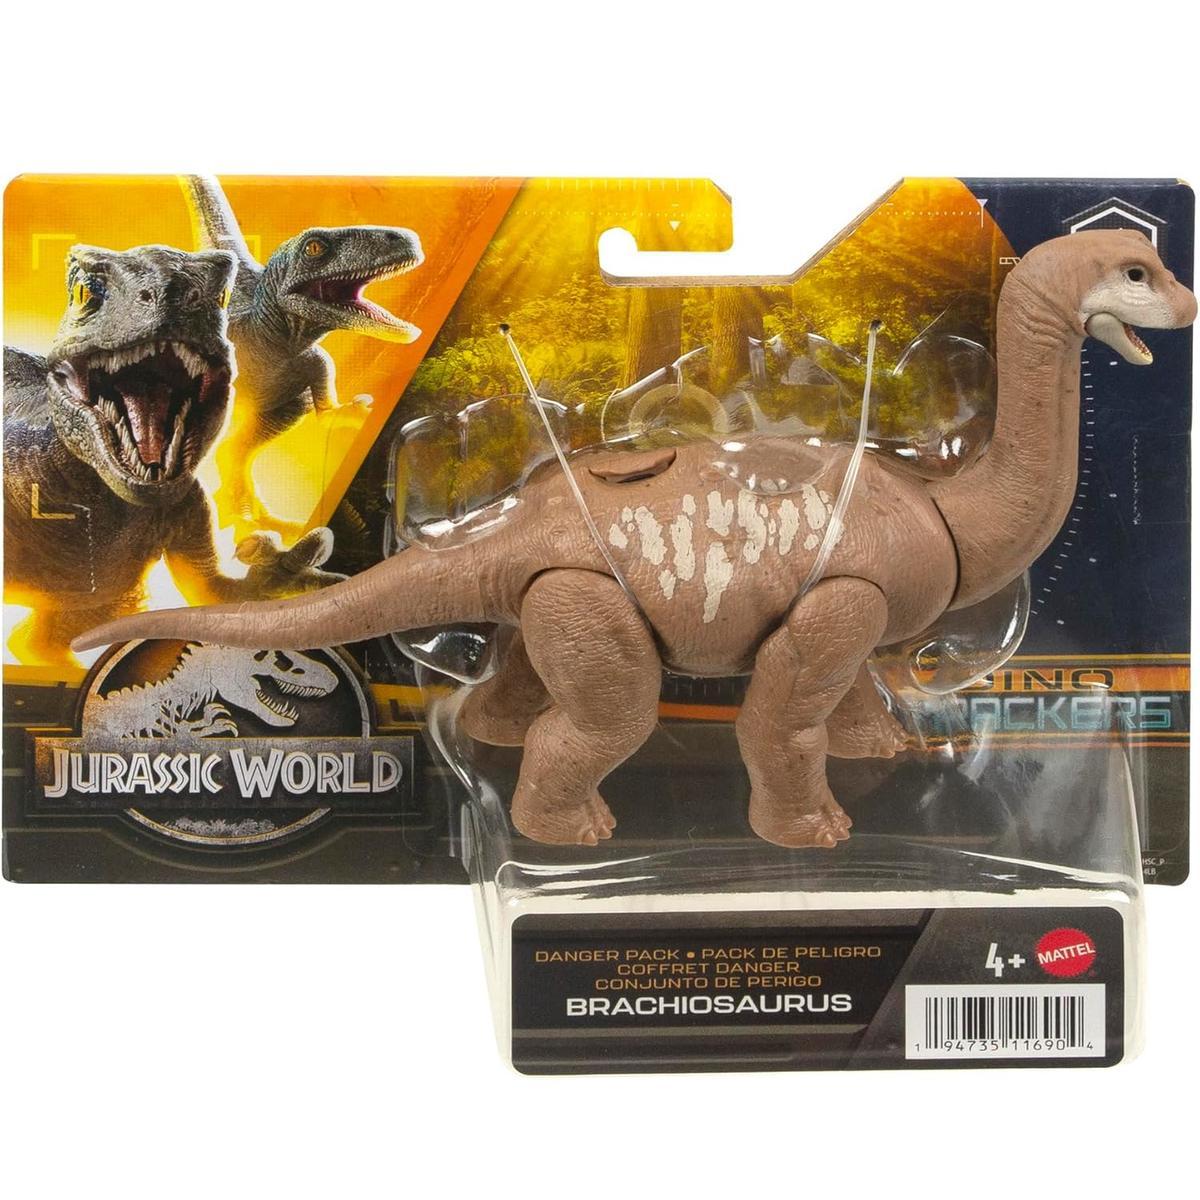 Jurassic world dino trackers park jurajski figurka dinozaur brachiosaurus nr. 1